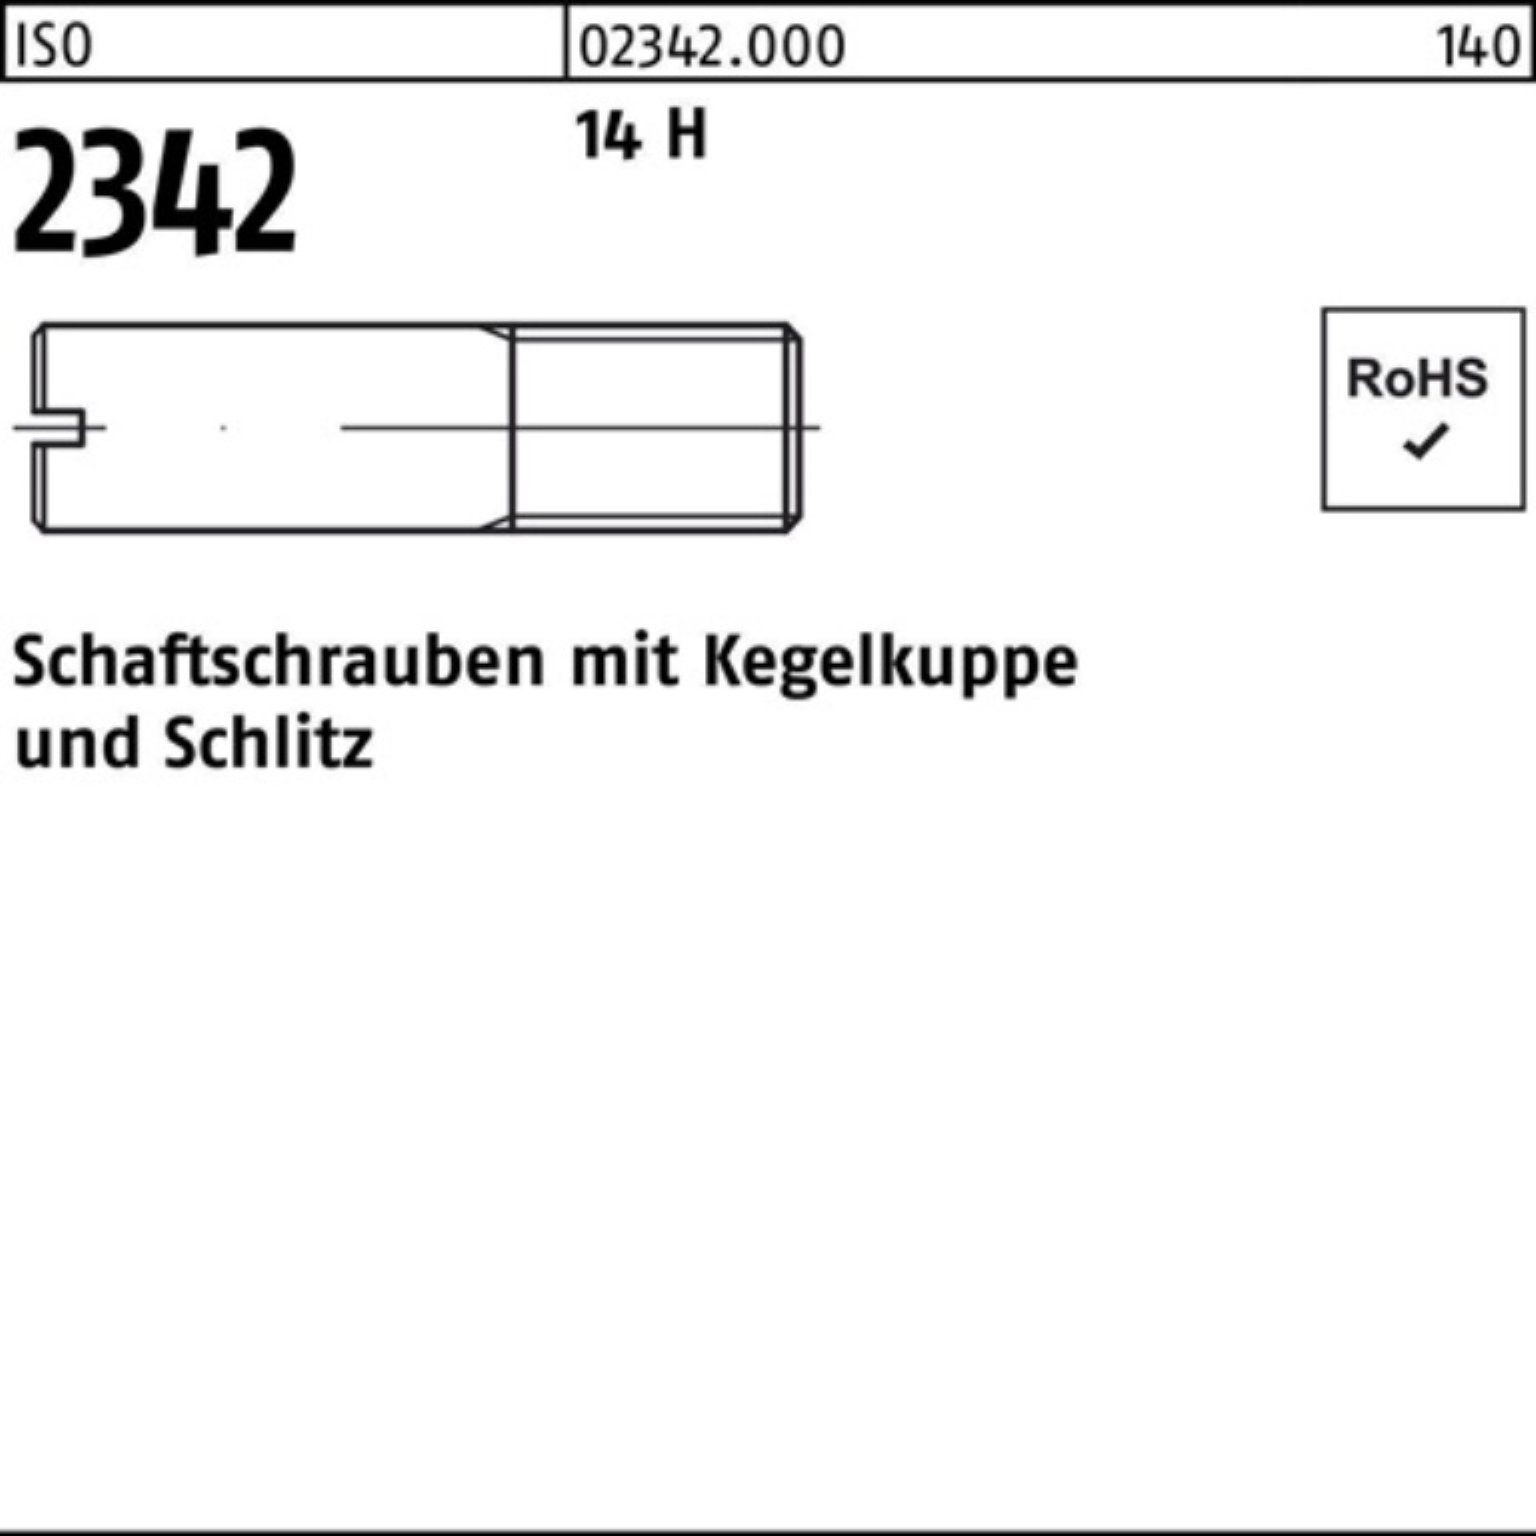 Reyher Schraube 100er Pack Schaftschraube ISO 2342 Kegelkuppe/Schlitz M12x 20 14 H 50